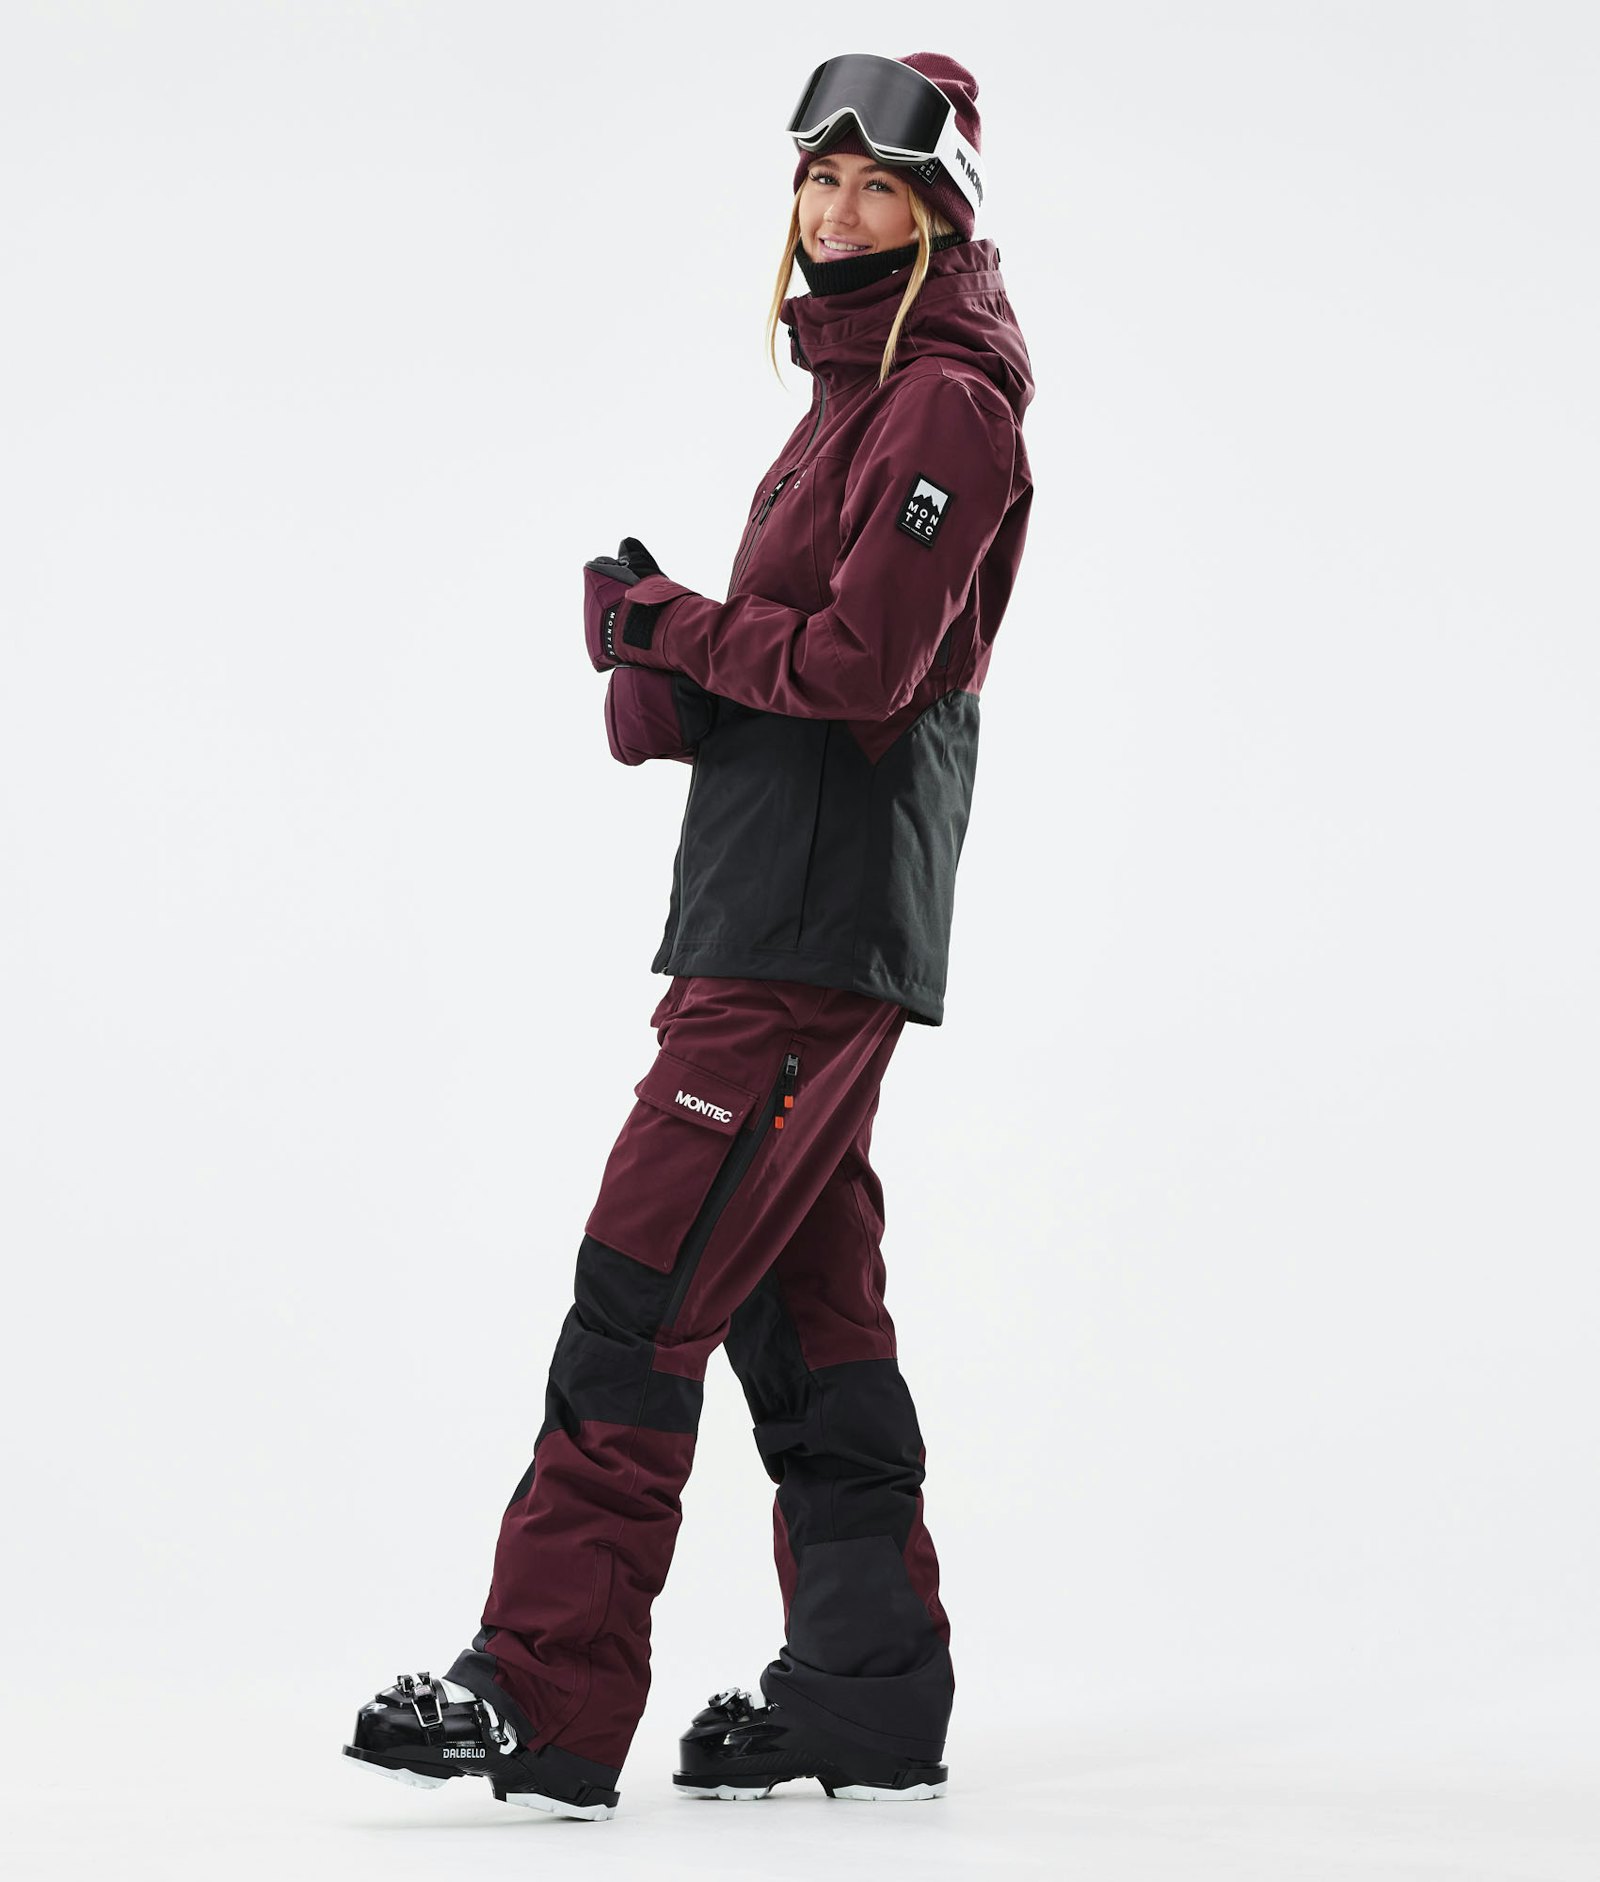 Moss W 2021 Manteau Ski Femme Burgundy/Black